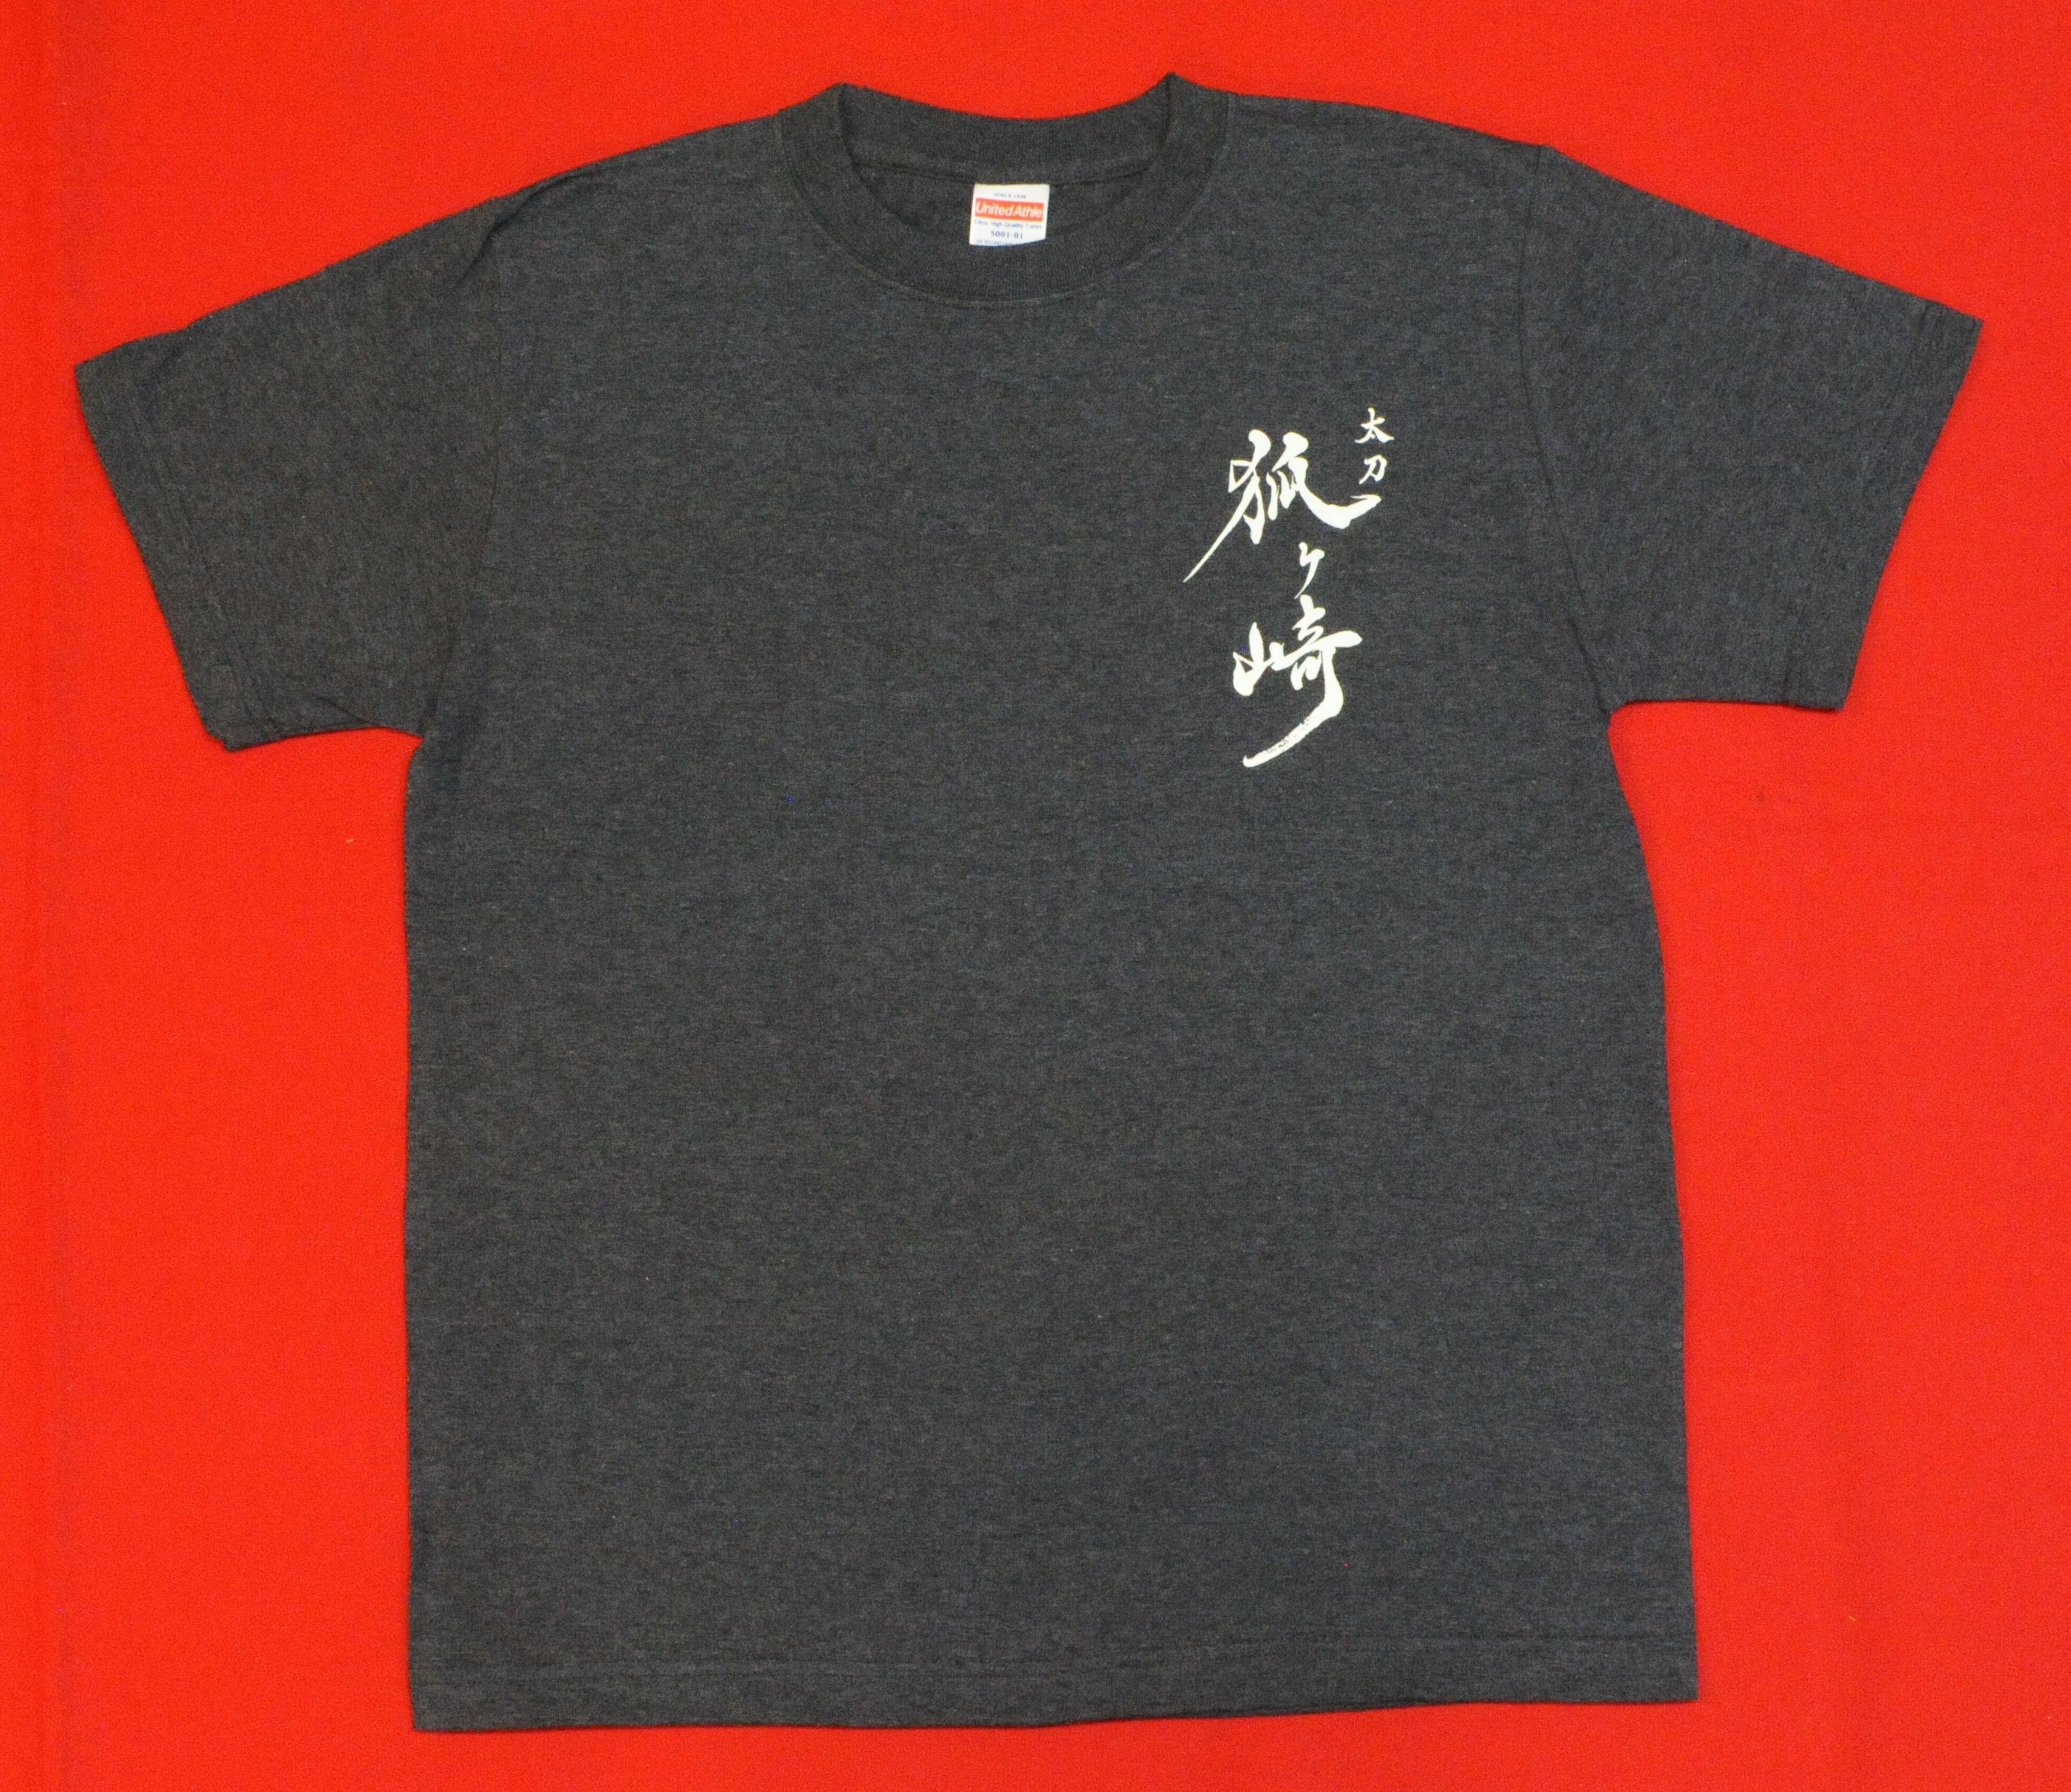 Tシャツ Lサイズ ネイビー 「太刀 狐ヶ崎」ロゴ入り 紺 L